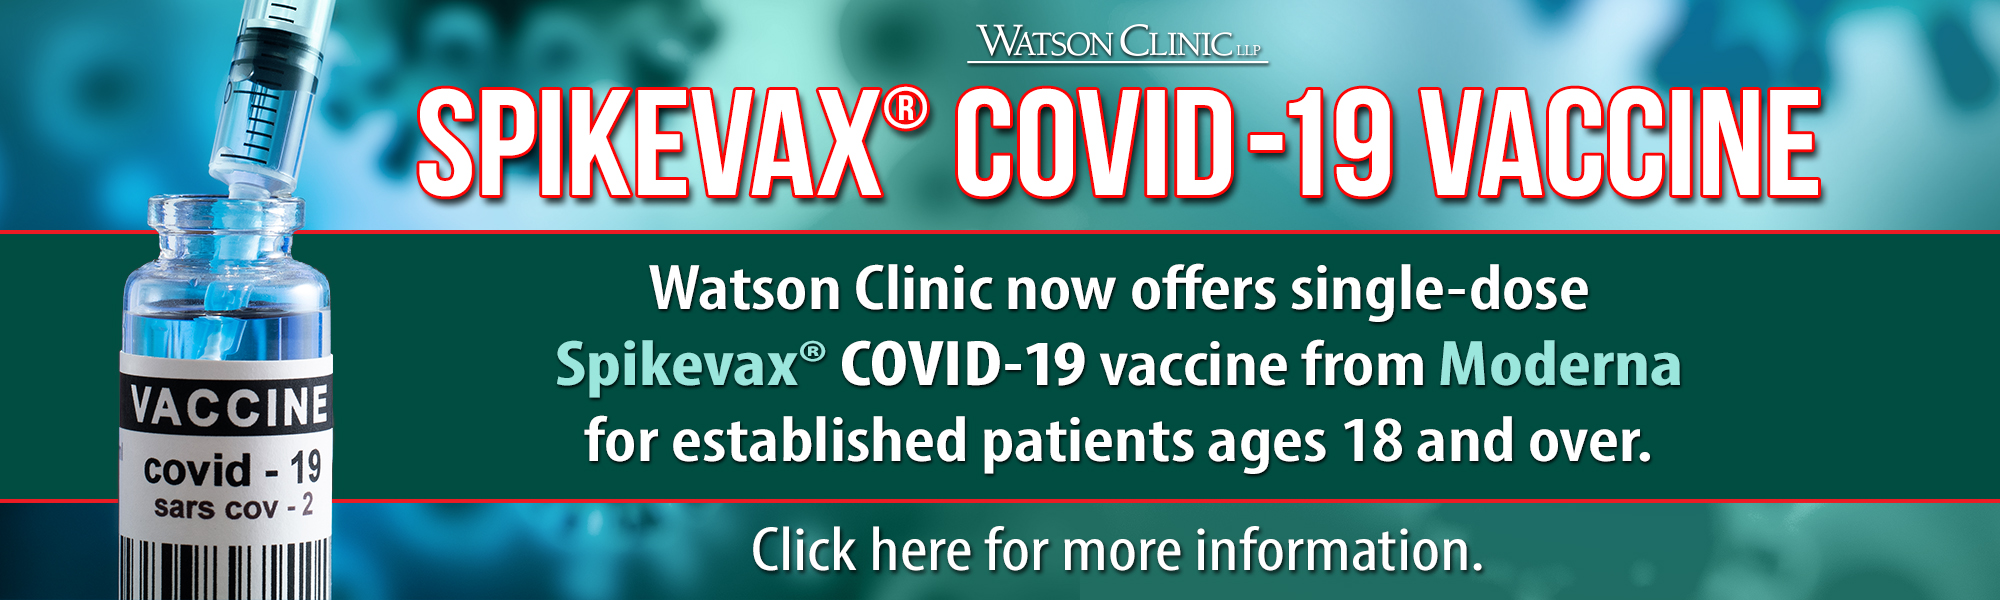 COVID New Vaccine 23